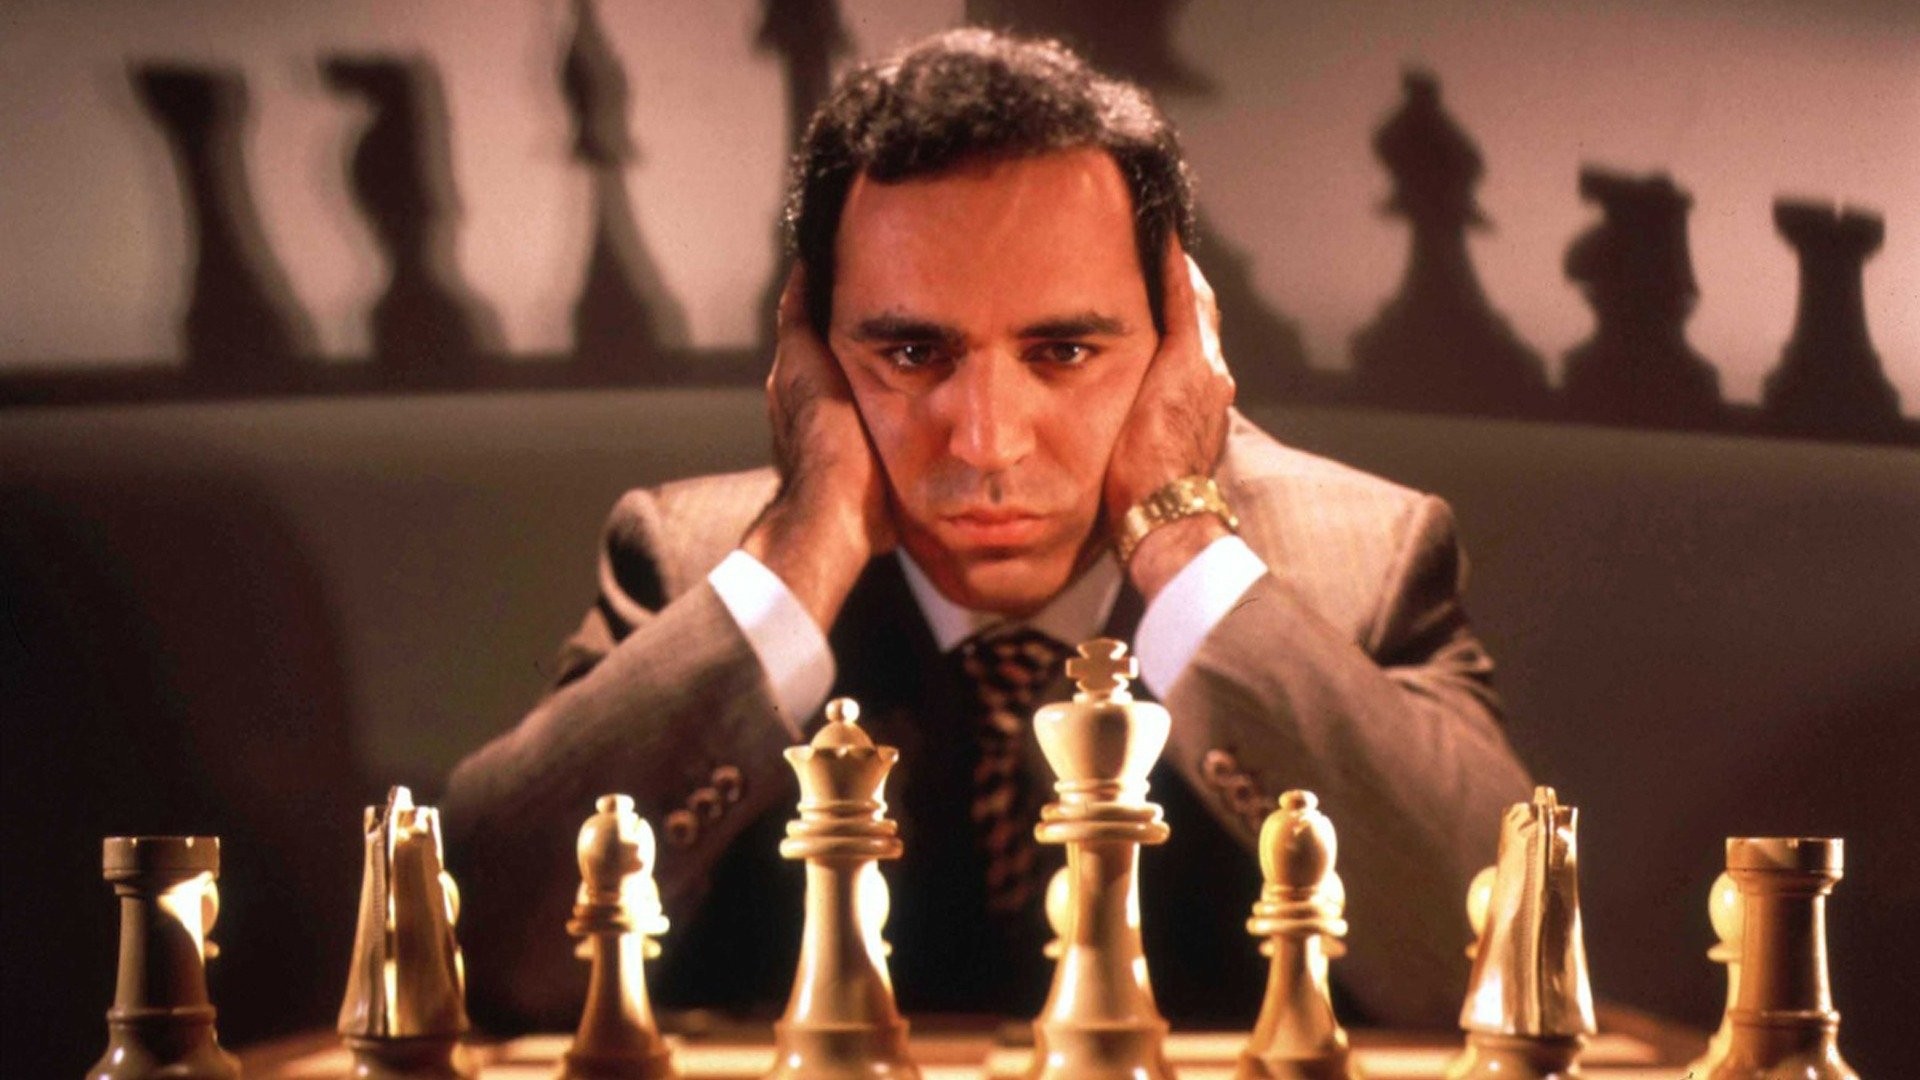 Clearance - Man V Machine - Kasparov V Ibm's Deep Blue